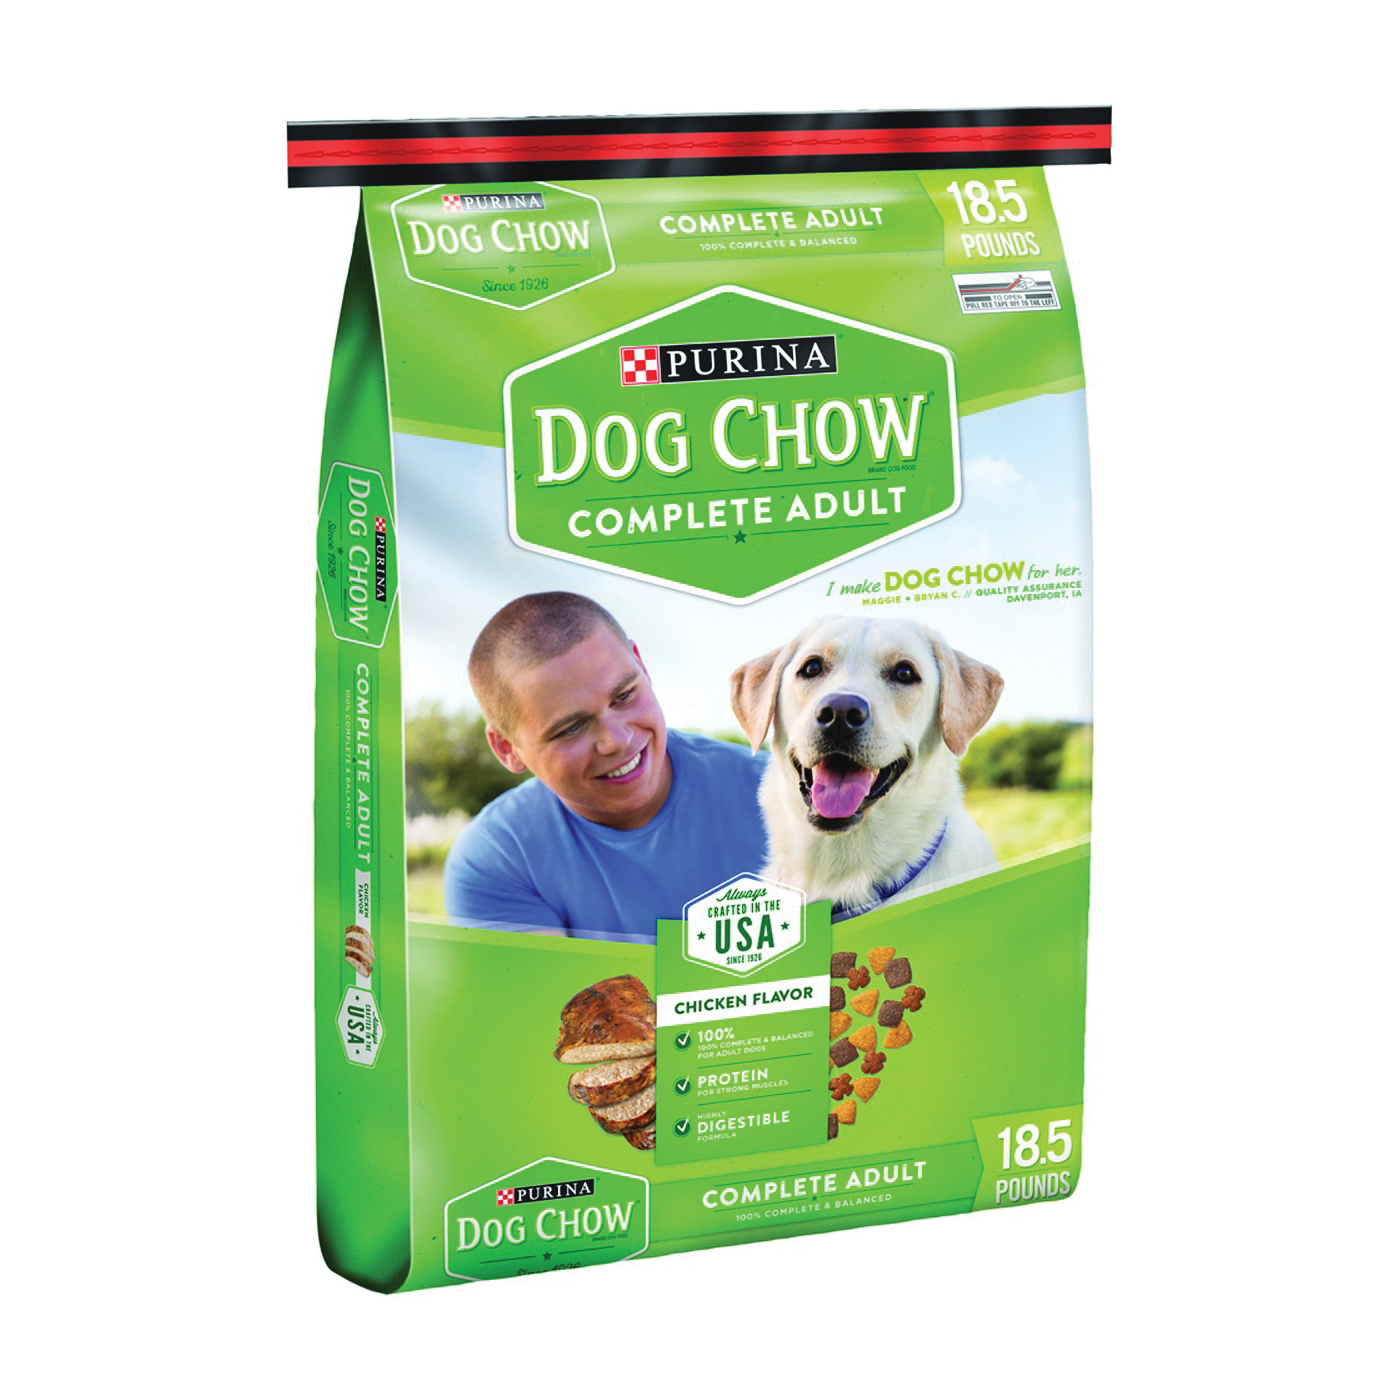 1780014915 Dog Food, 18.5 lb Bag